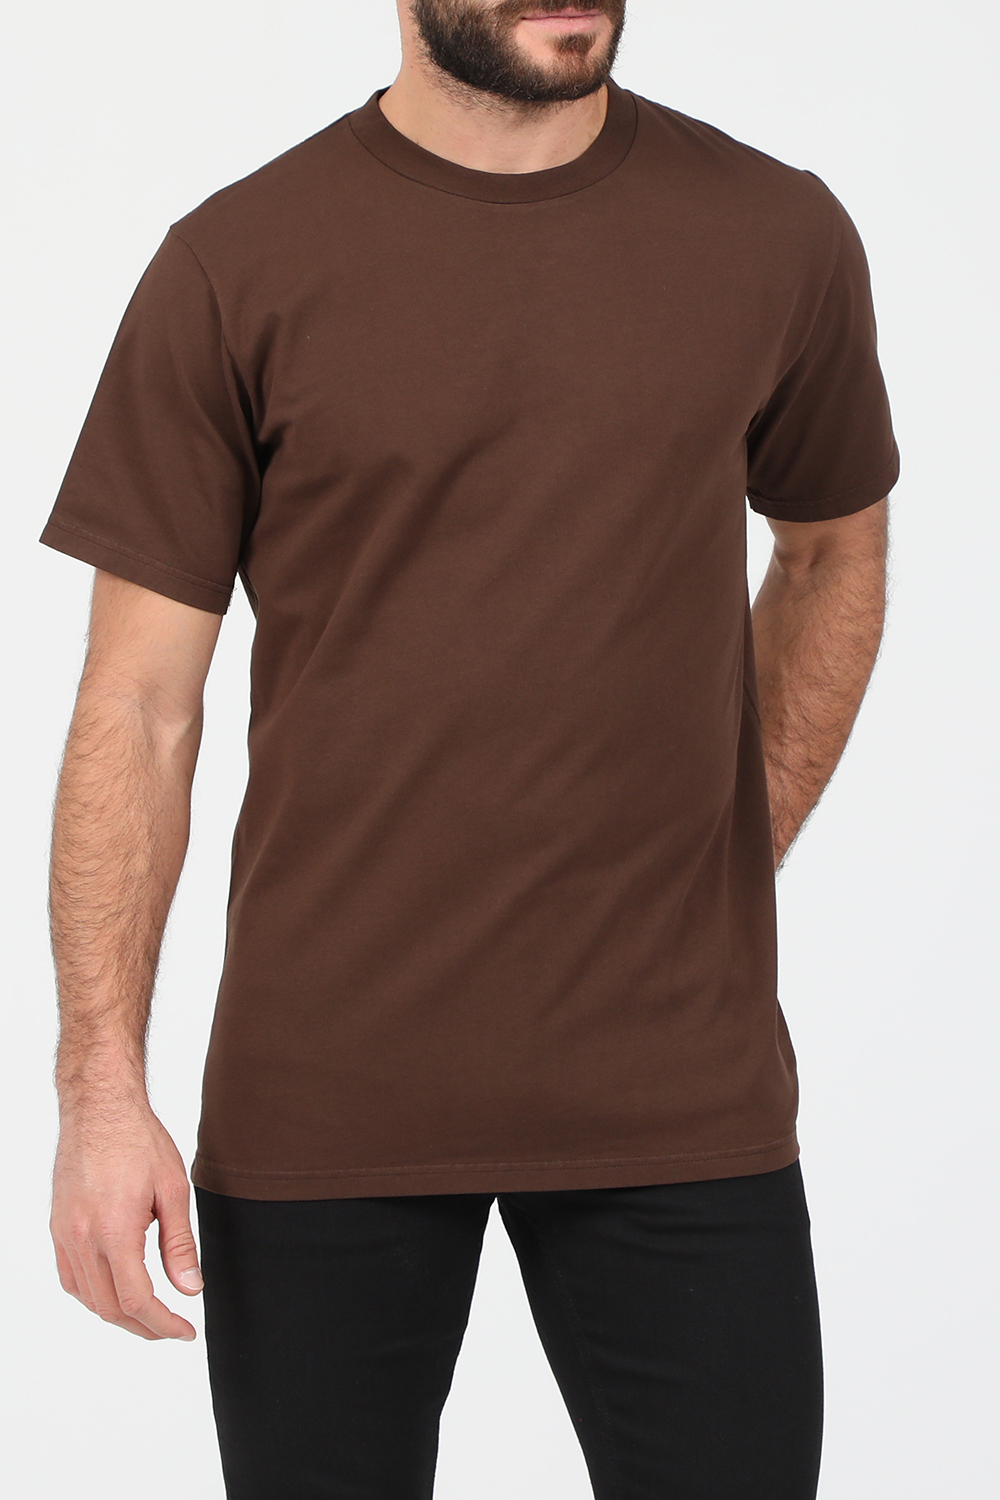 Ανδρικά/Ρούχα/Μπλούζες/Κοντομάνικες AMERICAN VINTAGE - Ανδρικό t-shirt AMERICAN VINTAGE καφέ